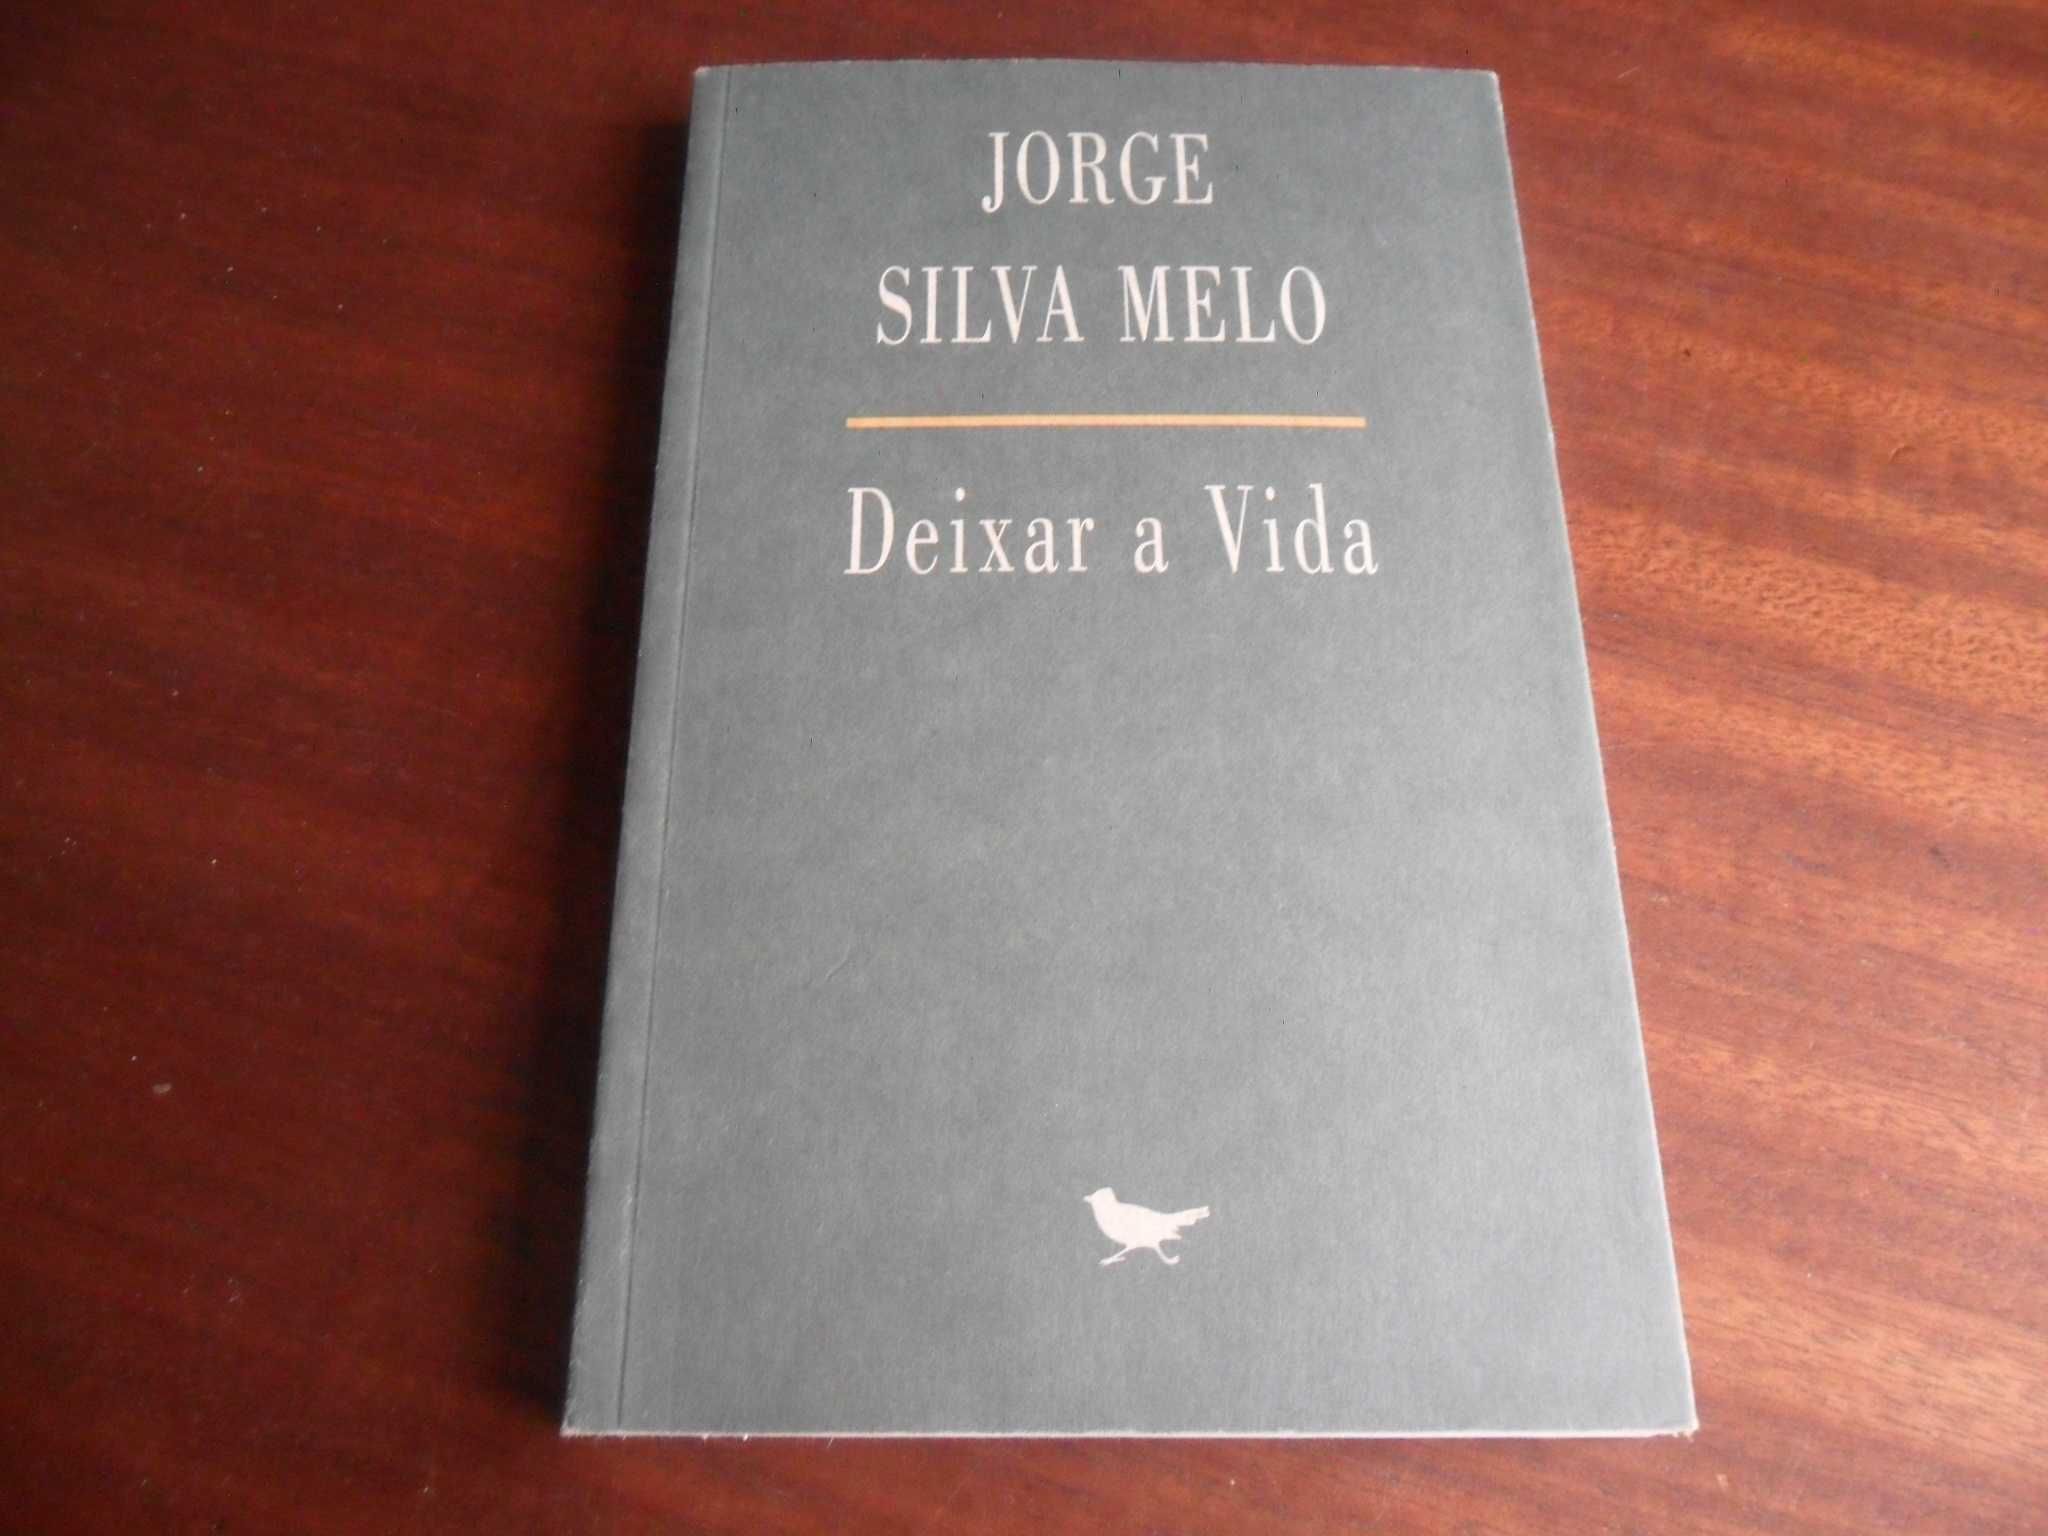 "Deixar a Vida" de Jorge Silva Melo - 1ª Edição de 2002